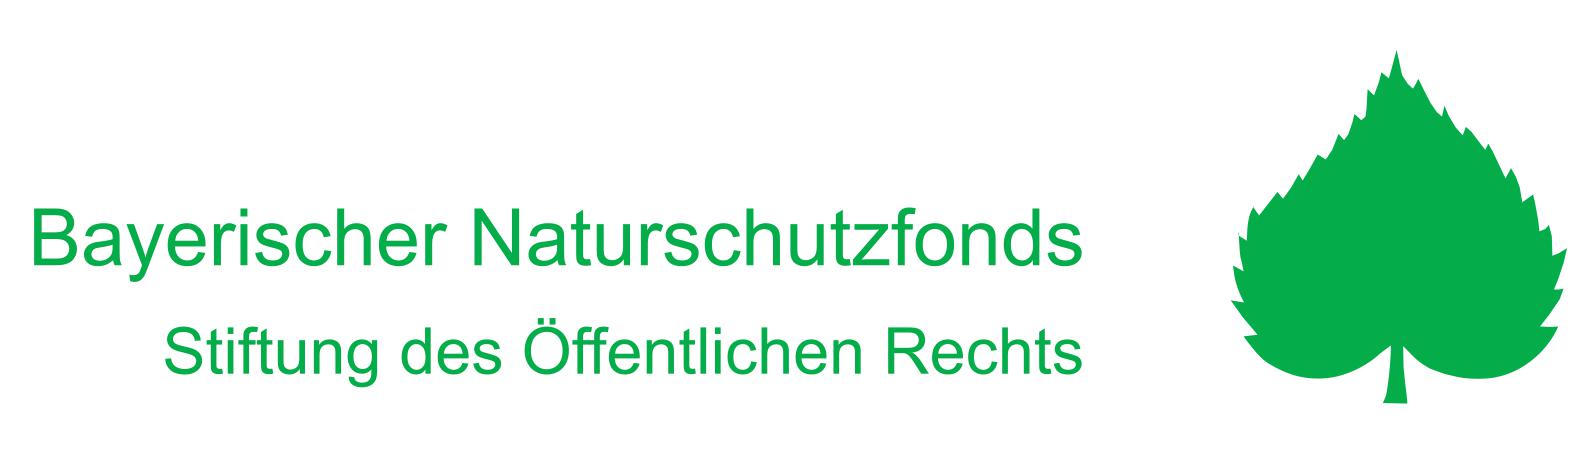 Logo "Bayerischer Naturschutzfonds"